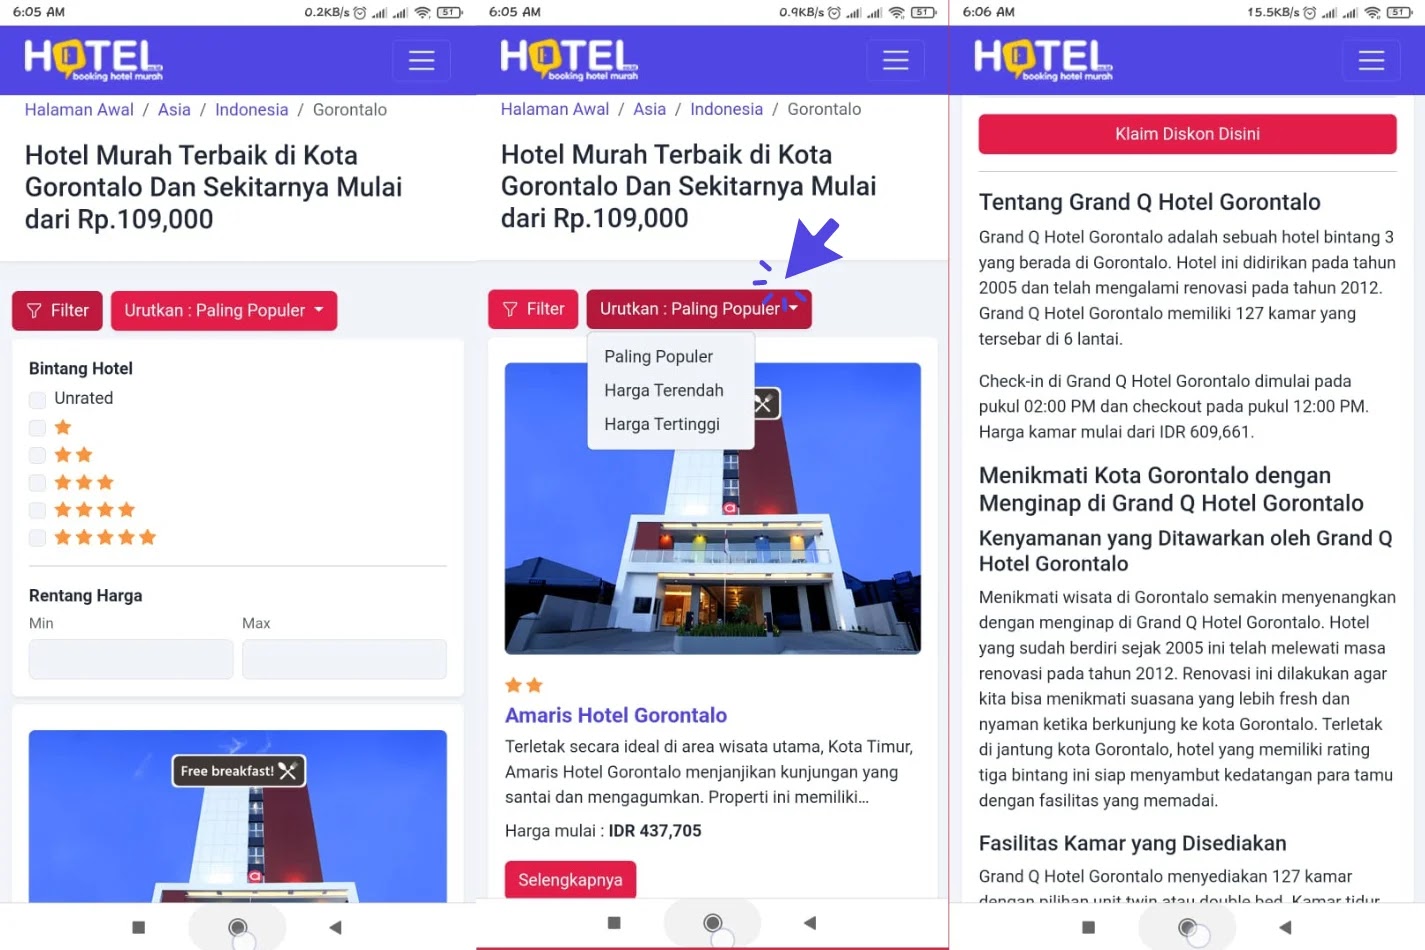 Review Hotel.co.id Situs Cari Hotel Murah Terbaik